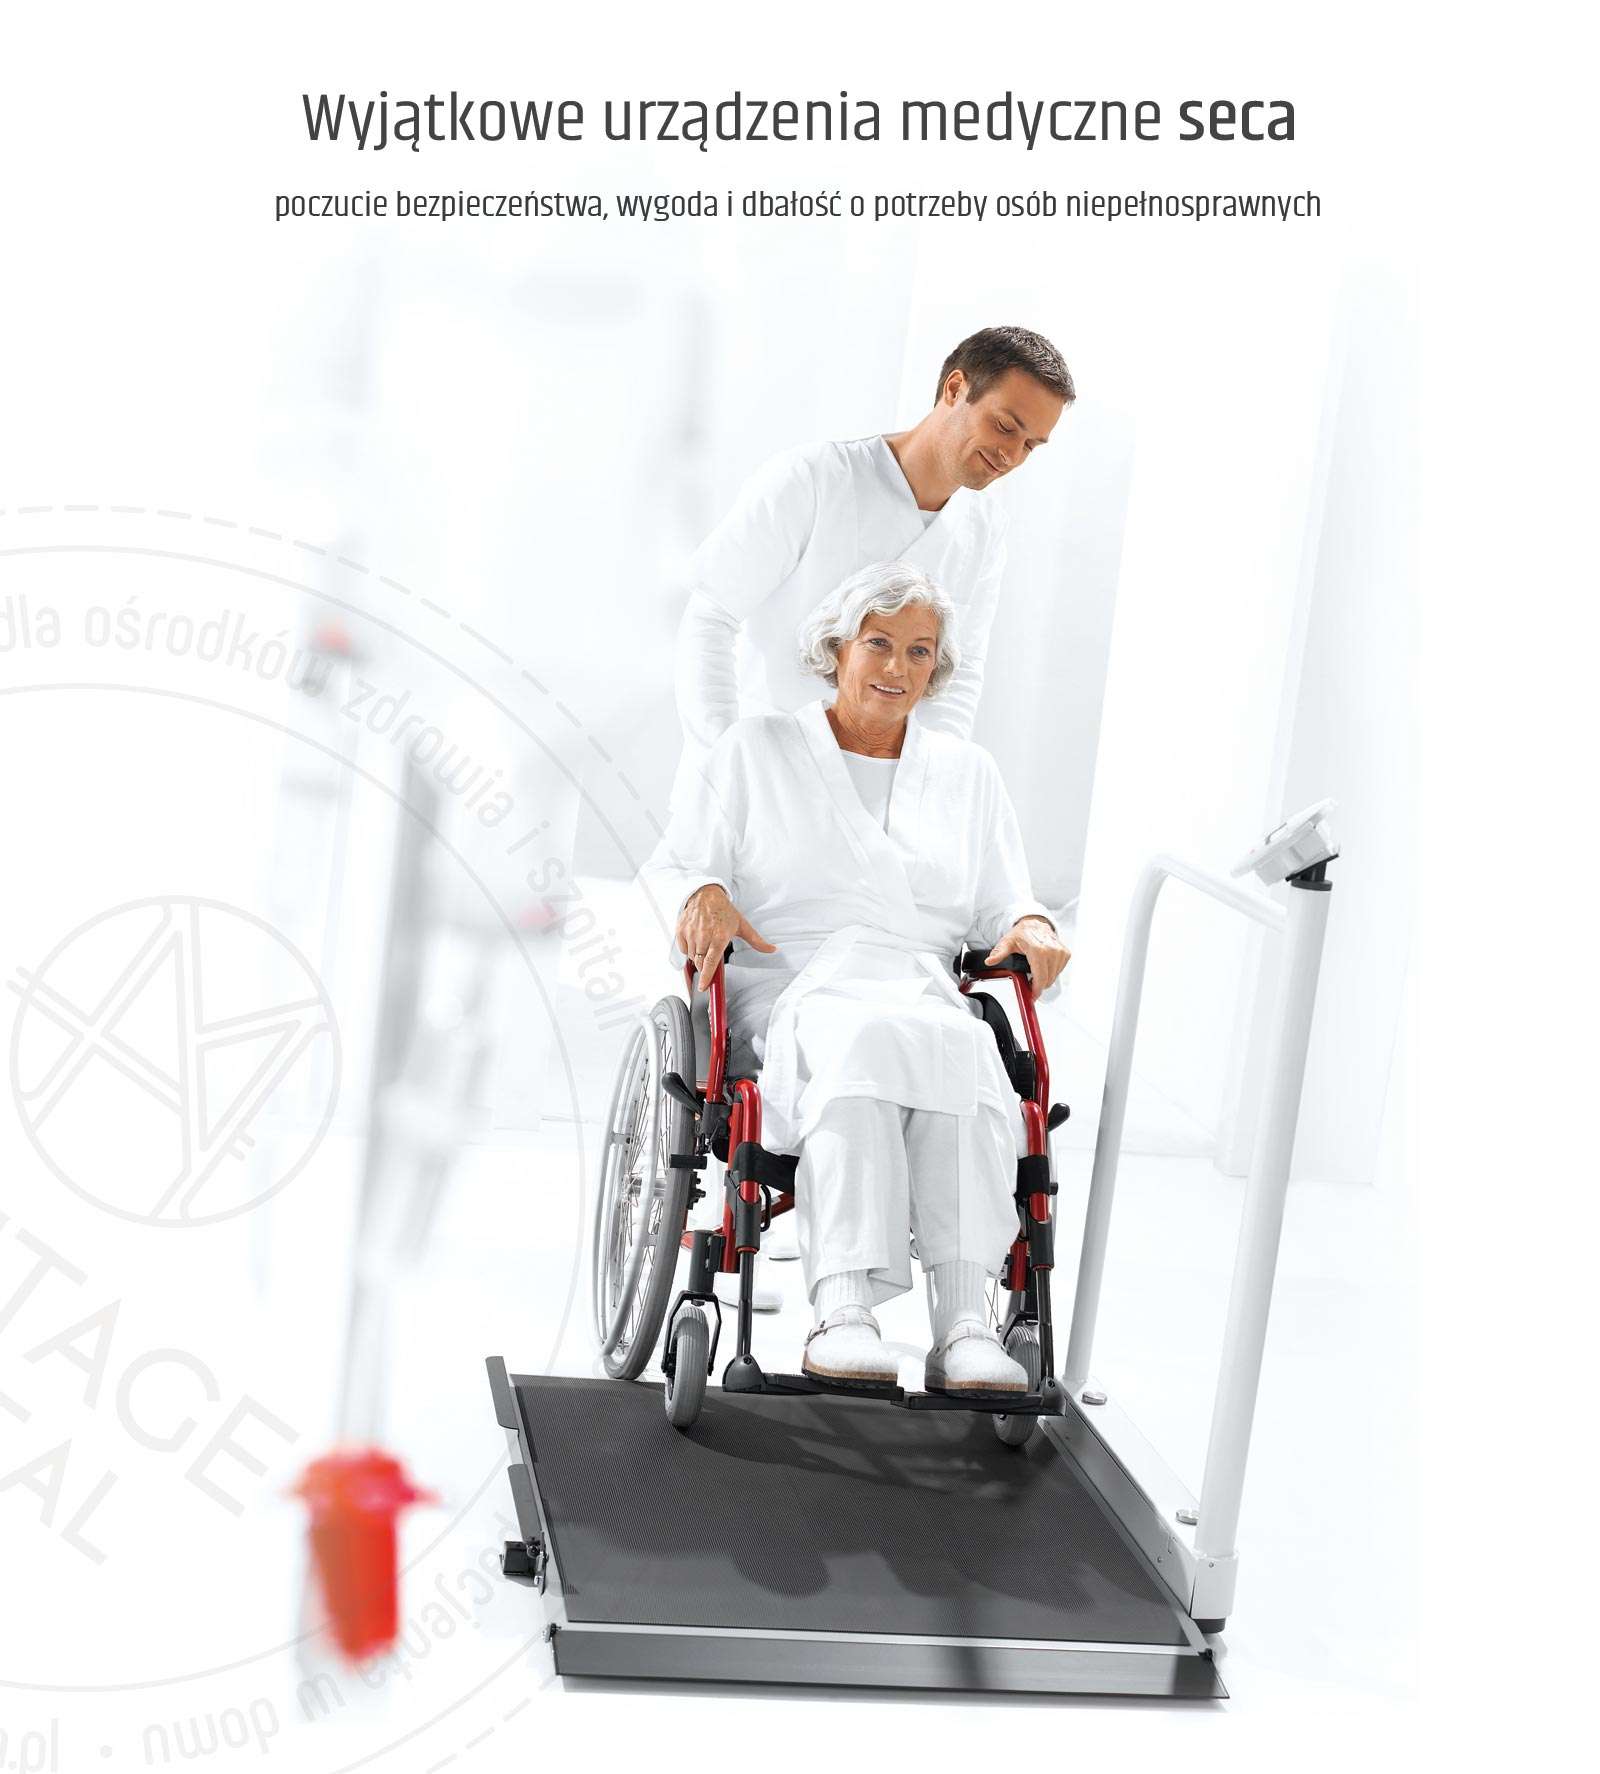 Urzadzenia medyczne dostosowane do potrzeb osób niepełnosprawnych